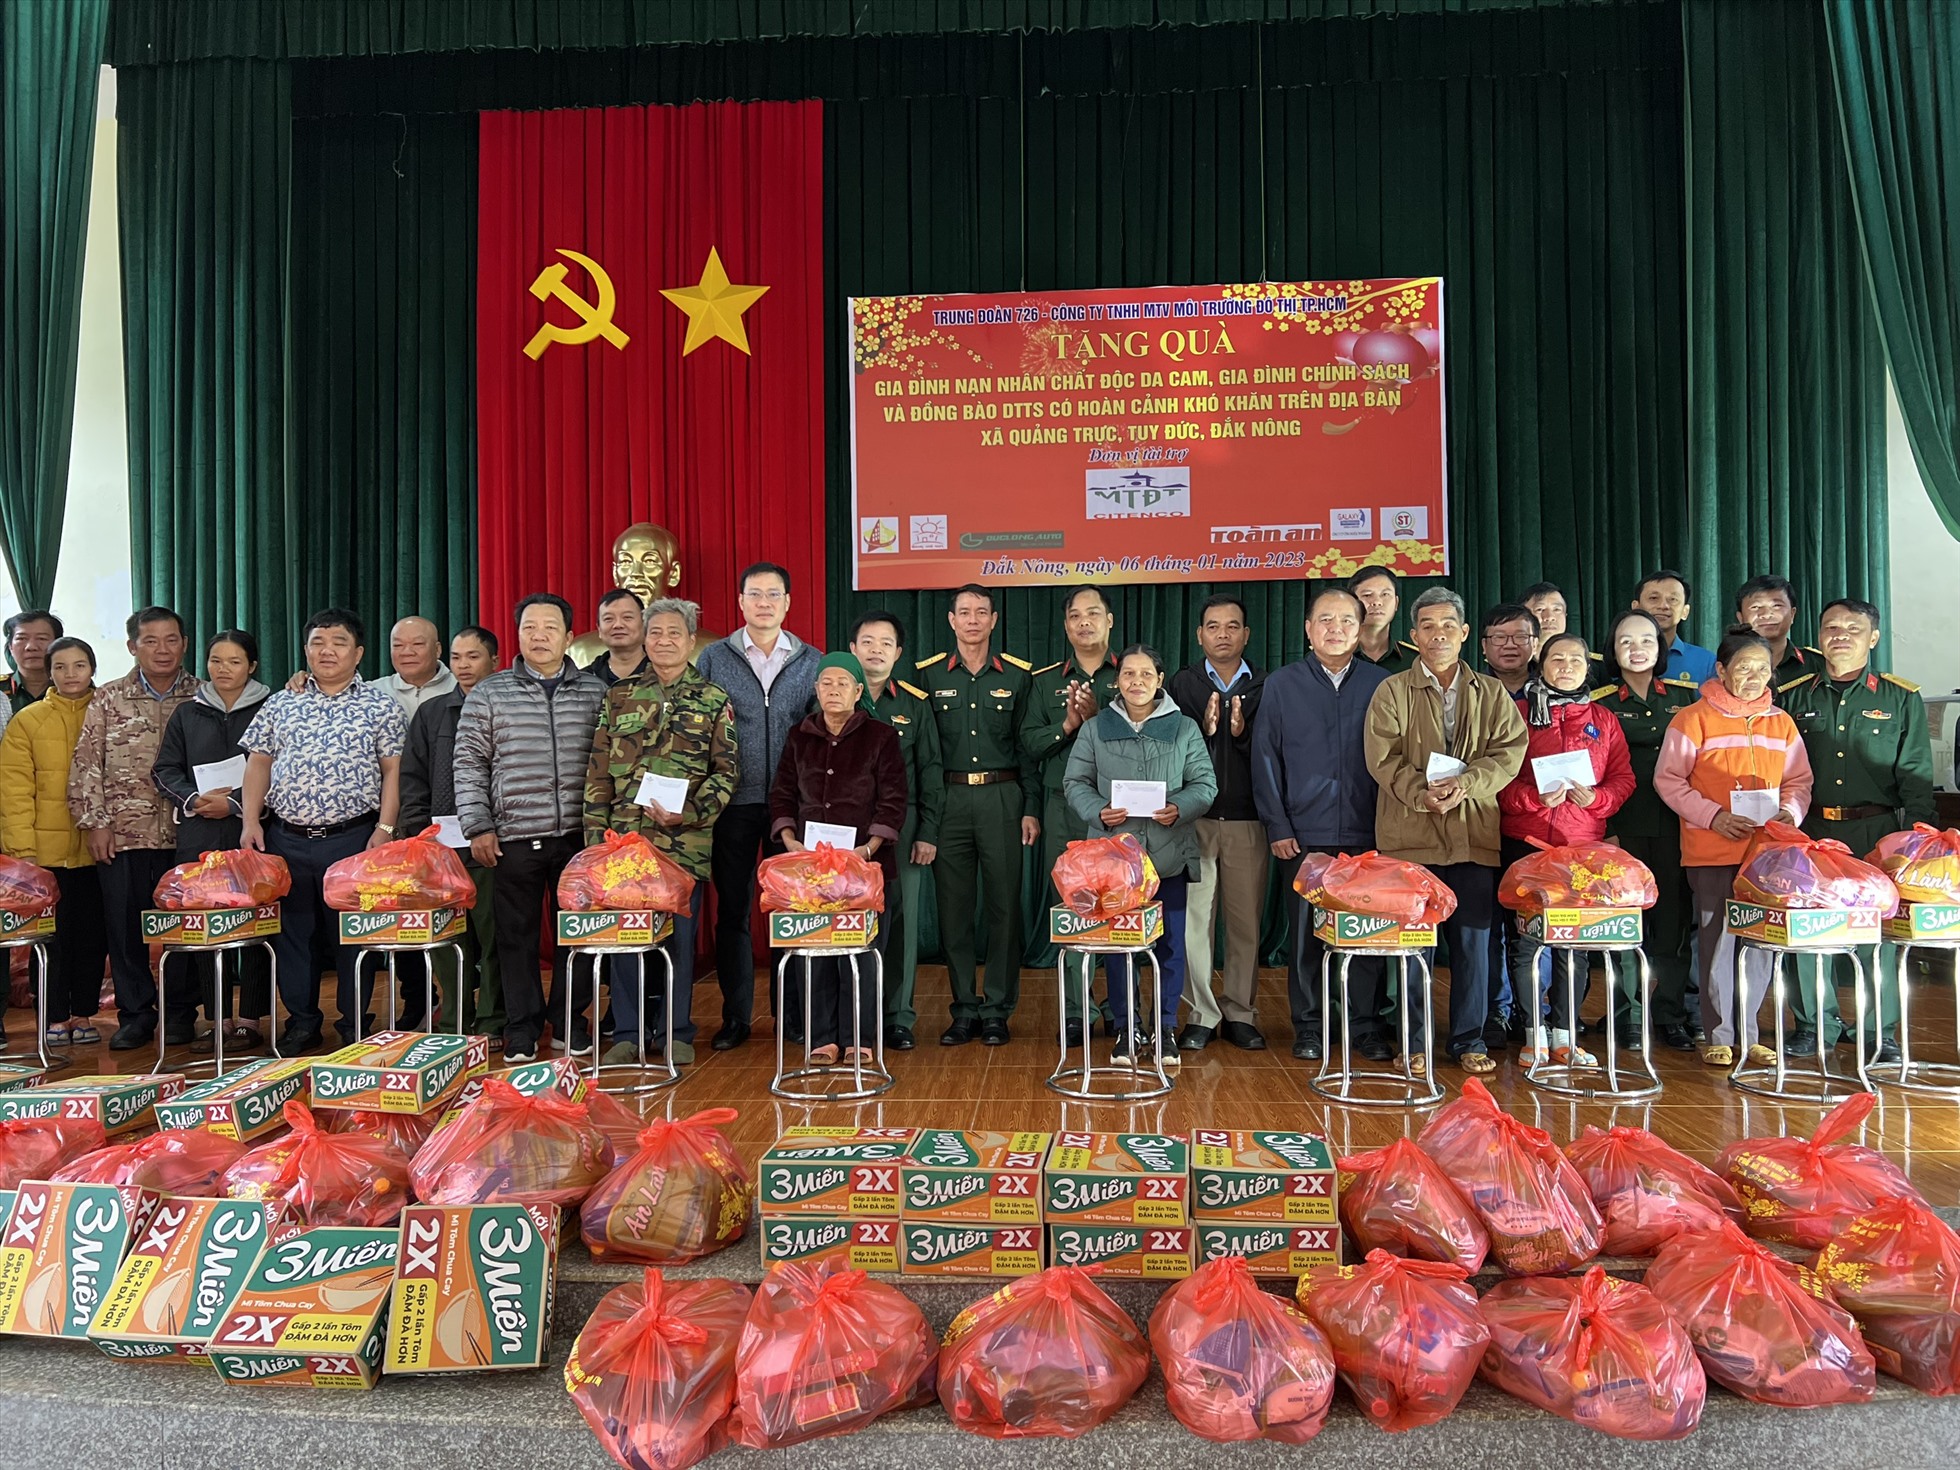 Lãnh đạo các đơn vị trao tặng các phần quà cho người dân có hoàn cảnh khó khăn ở huyện Tuy Đức. Ảnh: Hồng Thắm